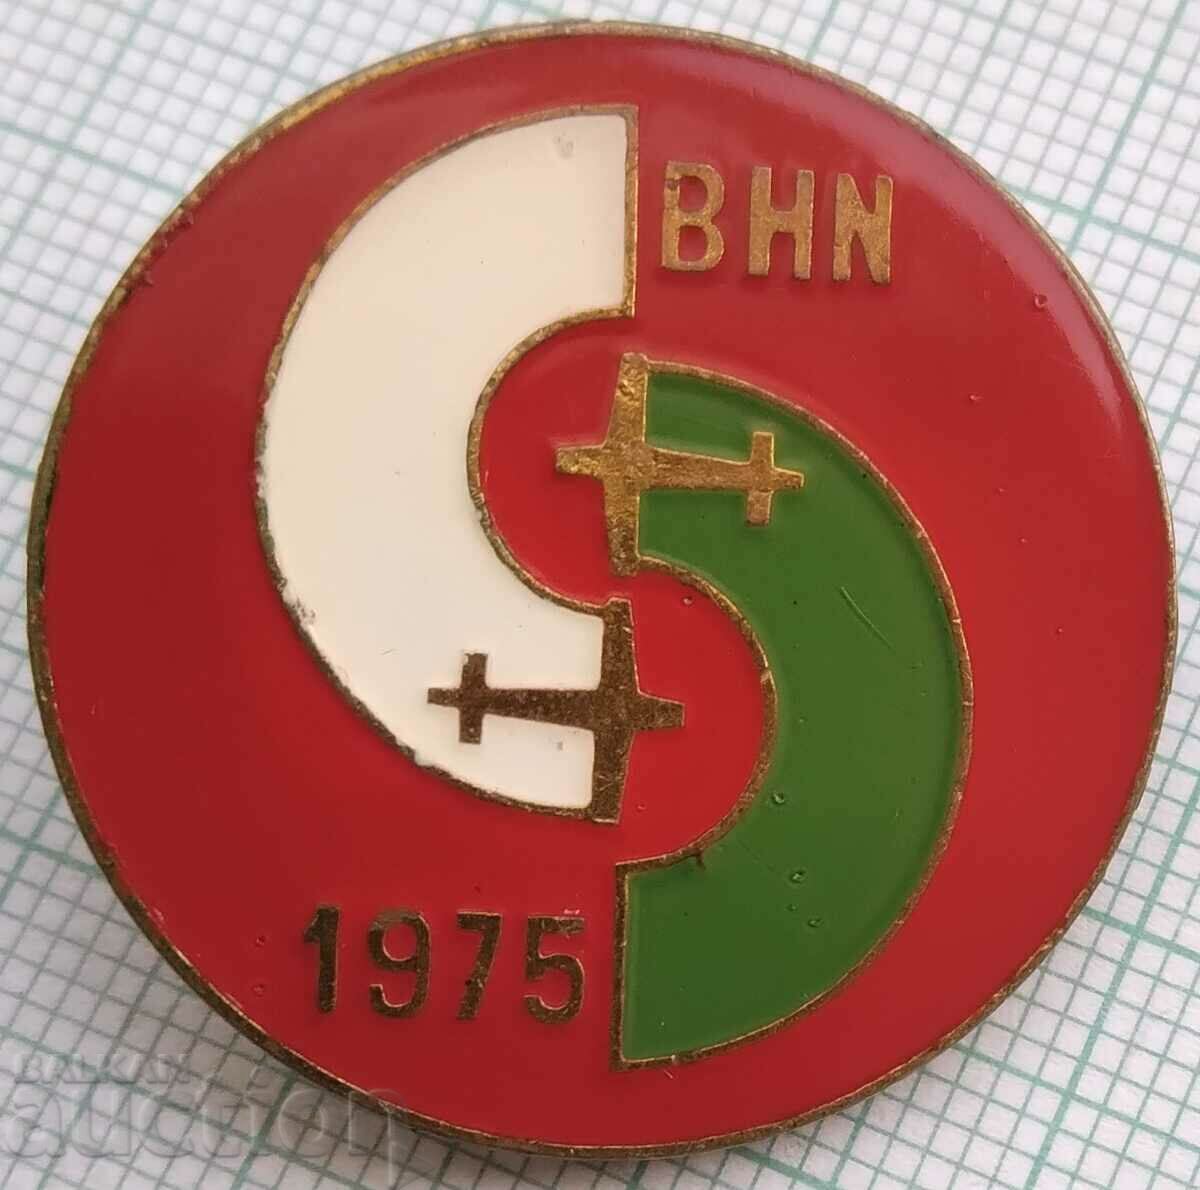 14402 Значка - авиация BHN 1976